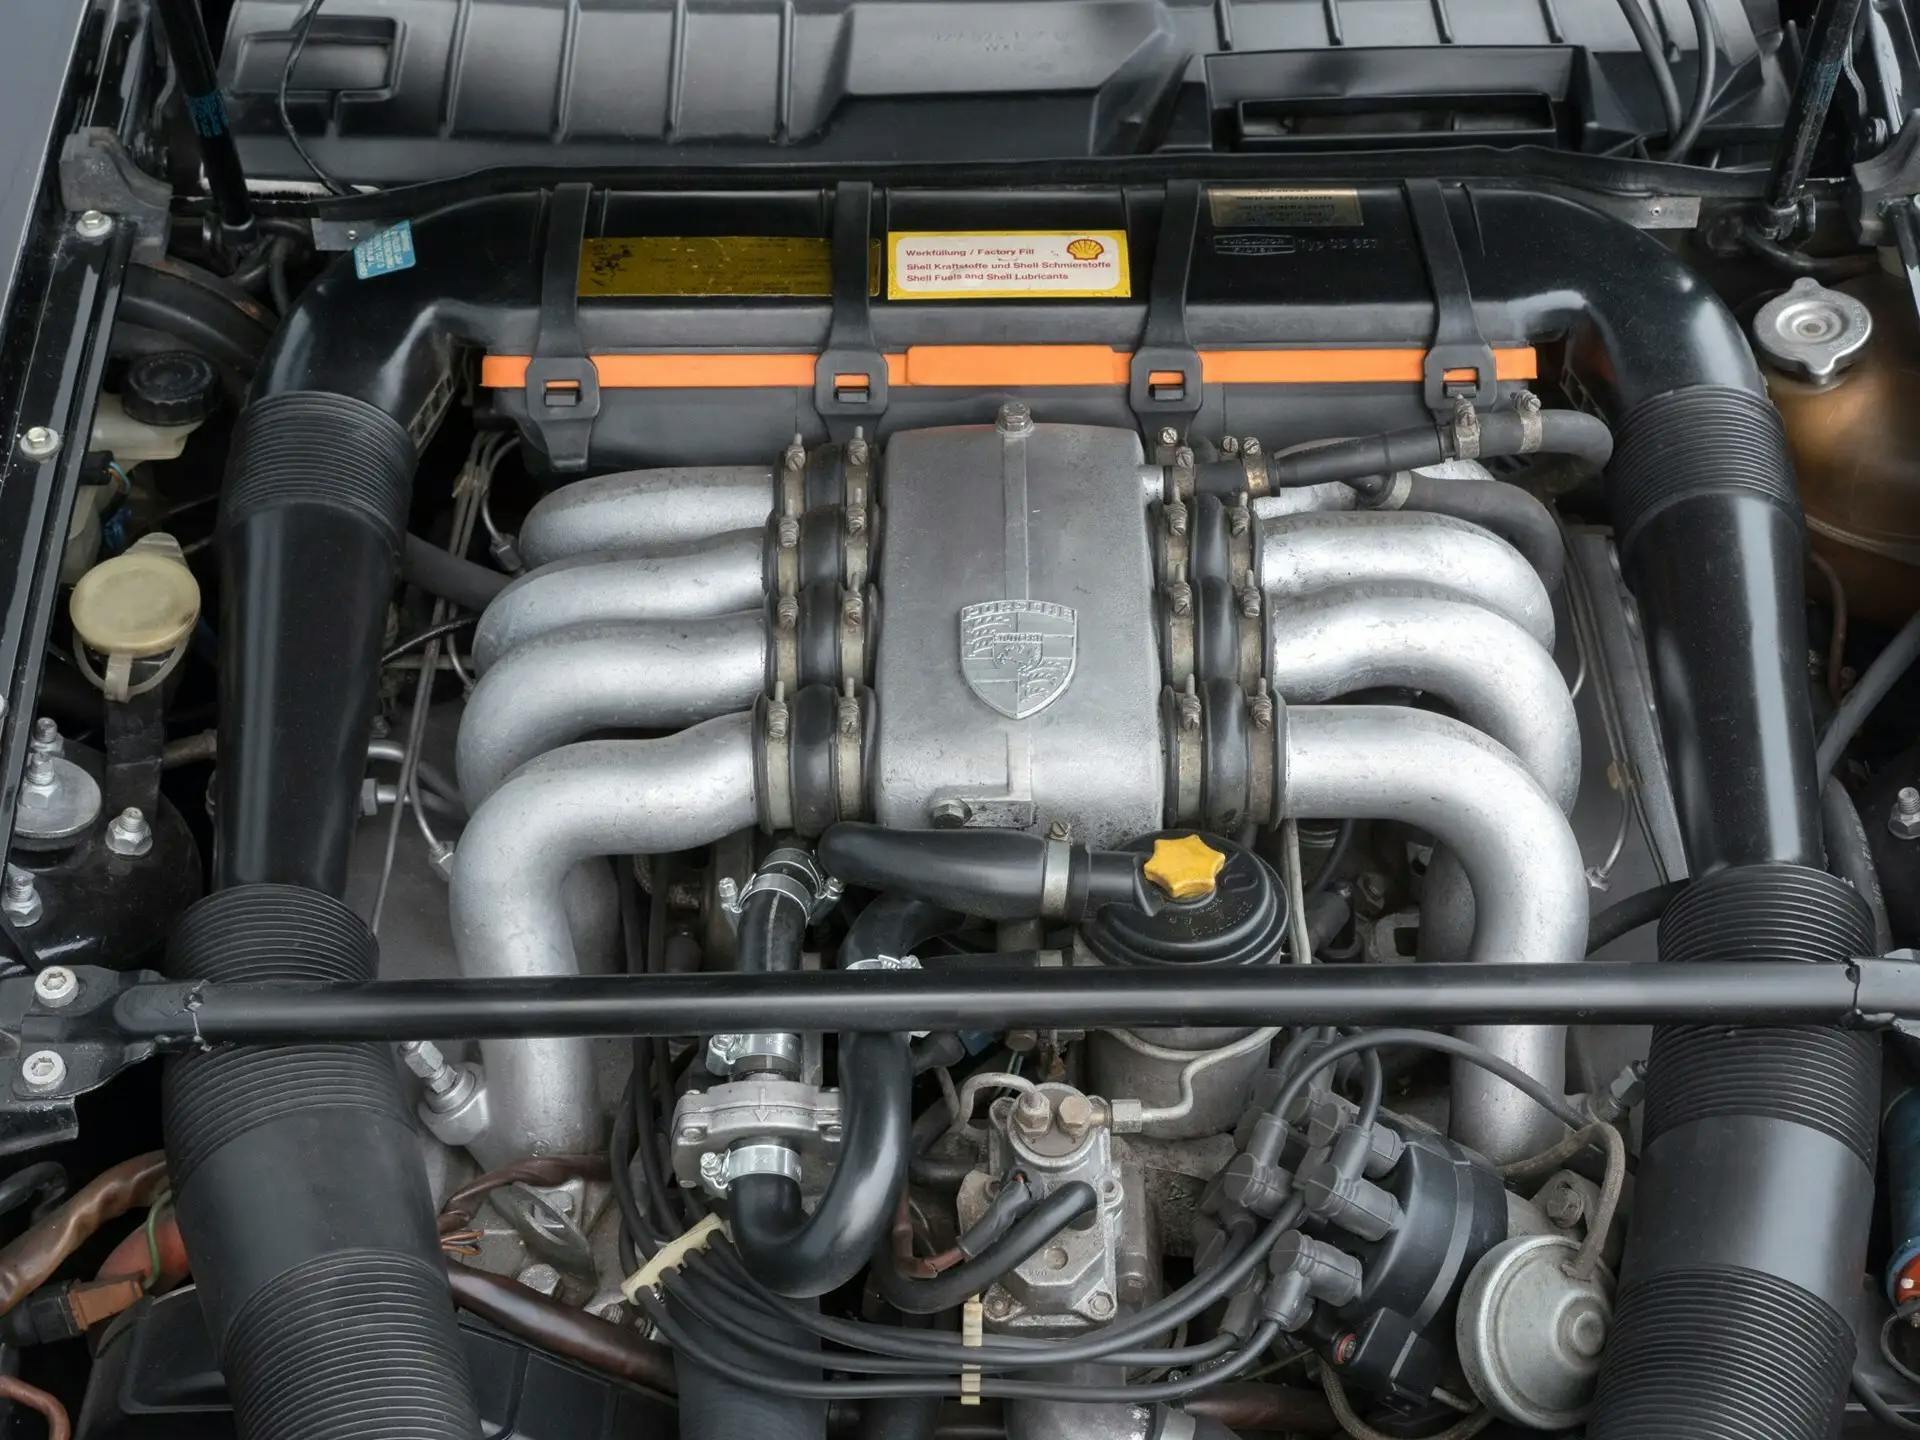 George Harrison's Porsche 928 - engine